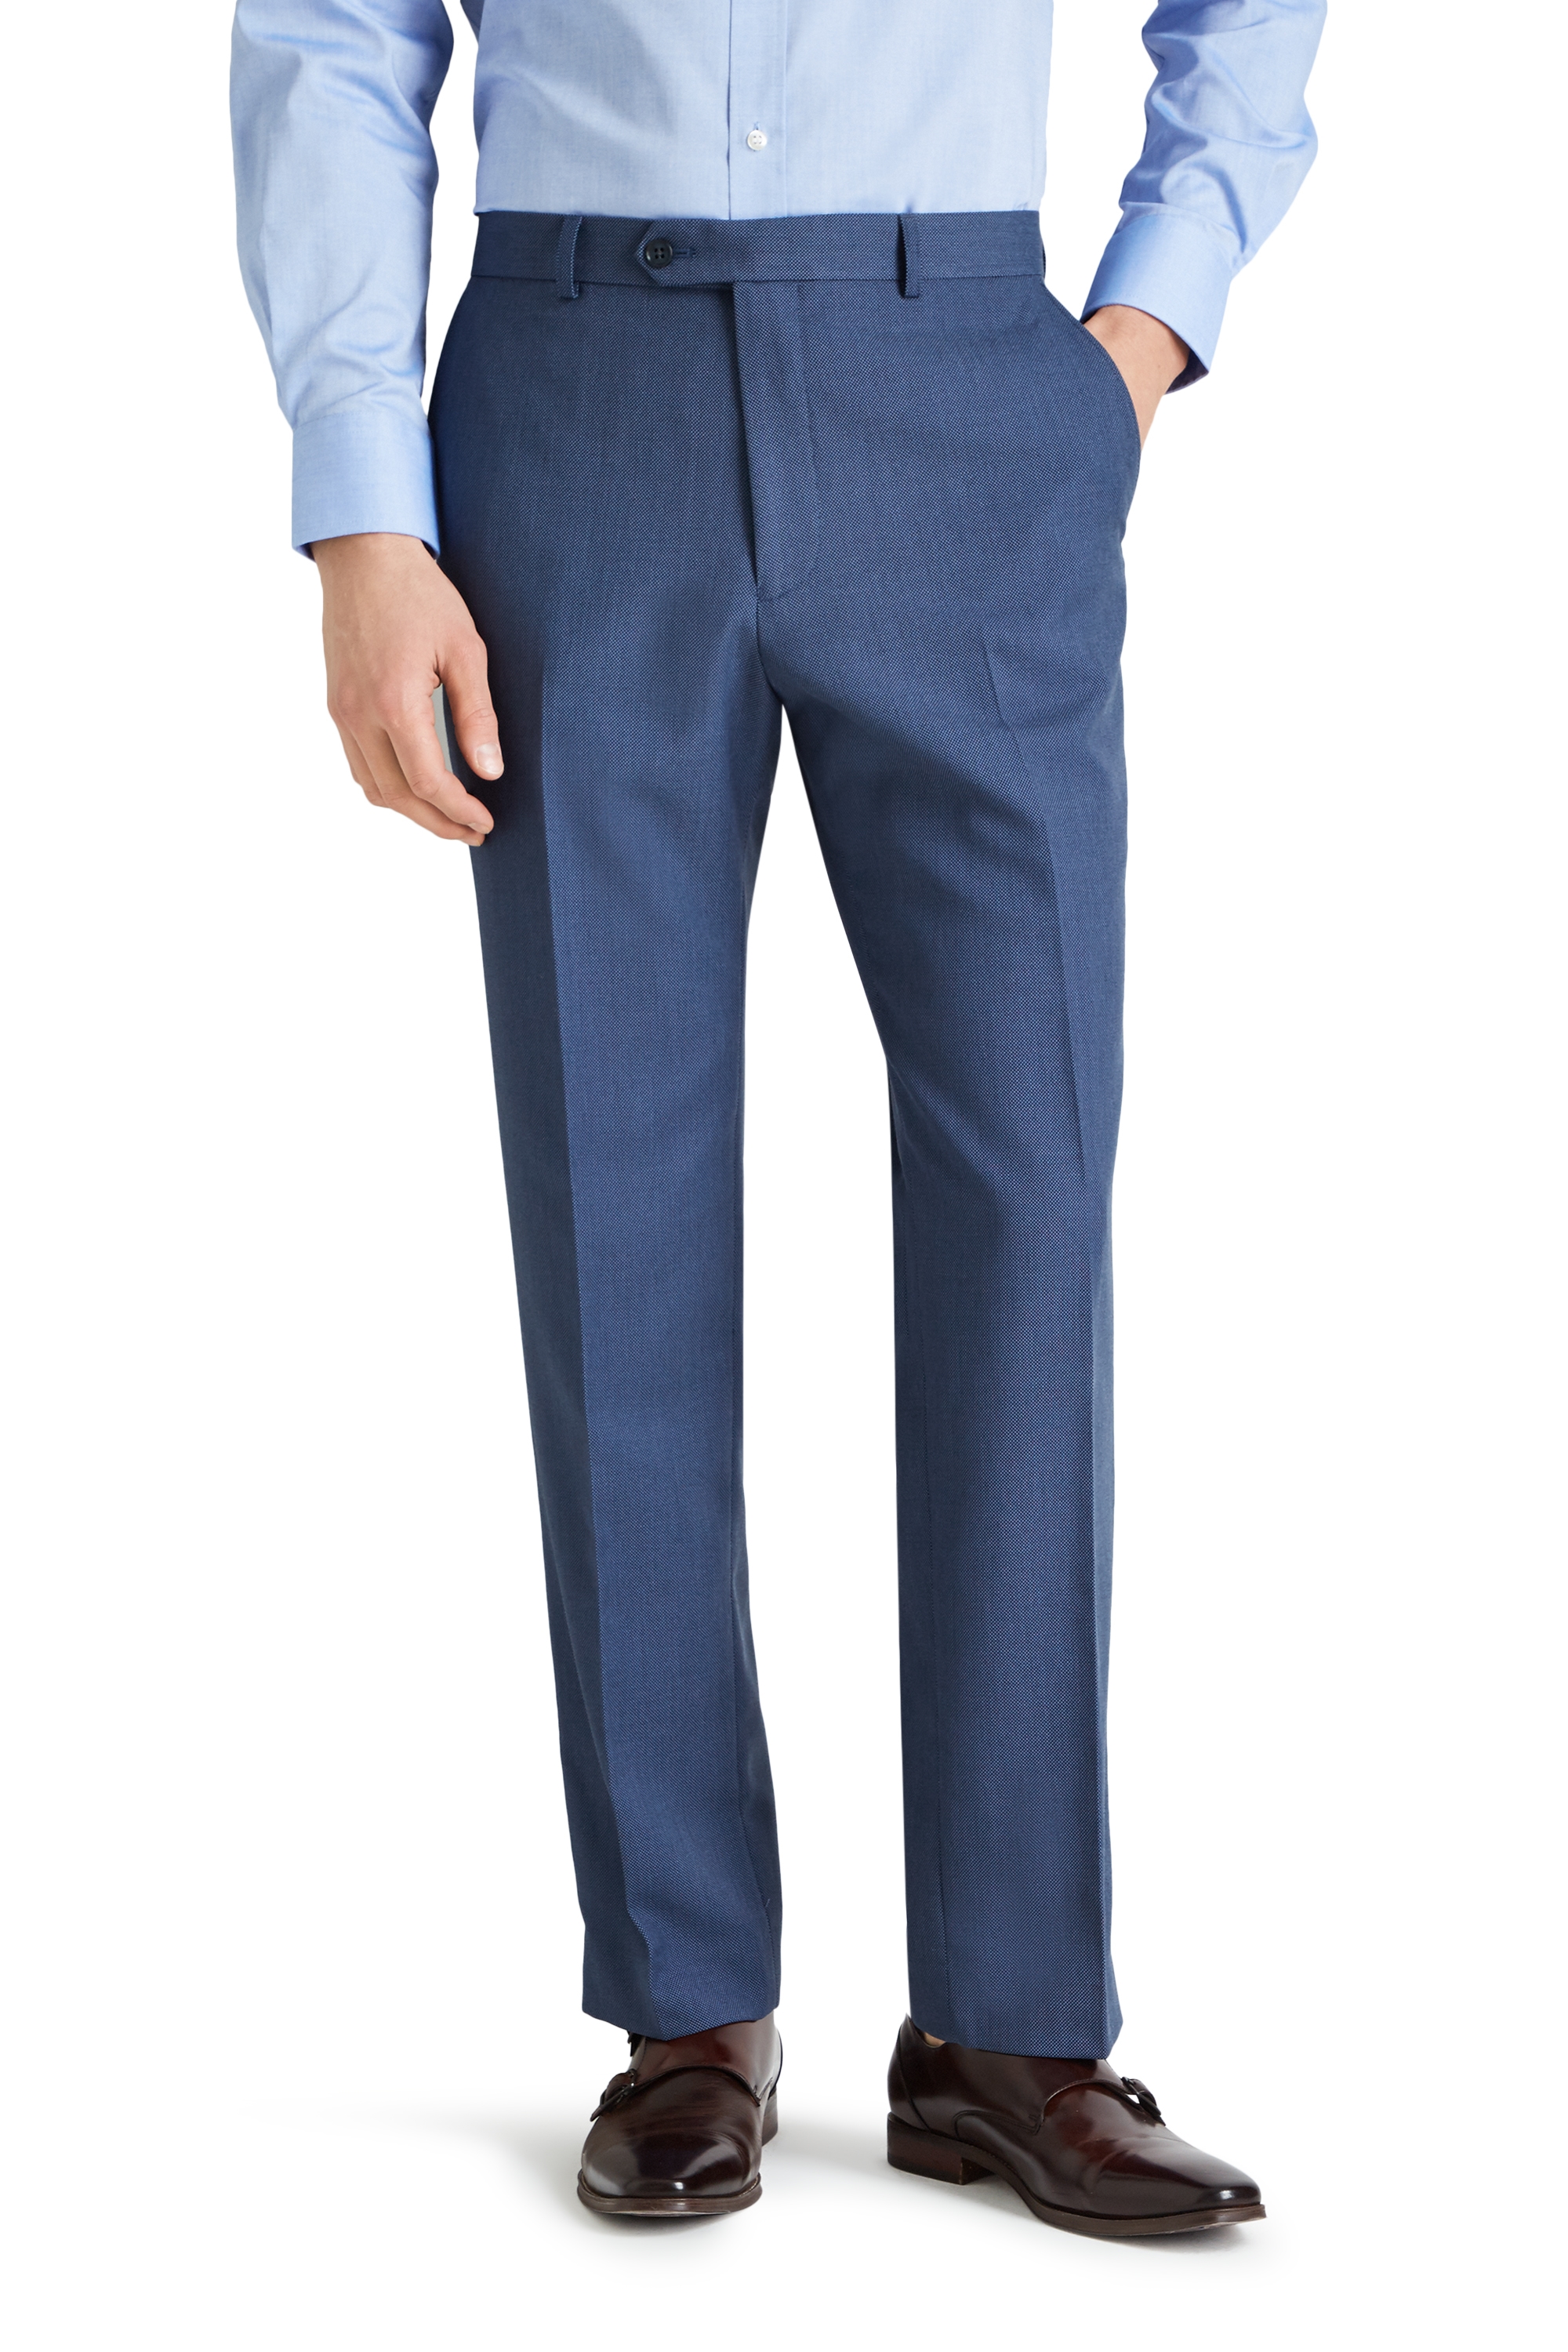 Moss Esq. Regular Fit Light Blue Birdseye Trouser | Buy Online at Moss